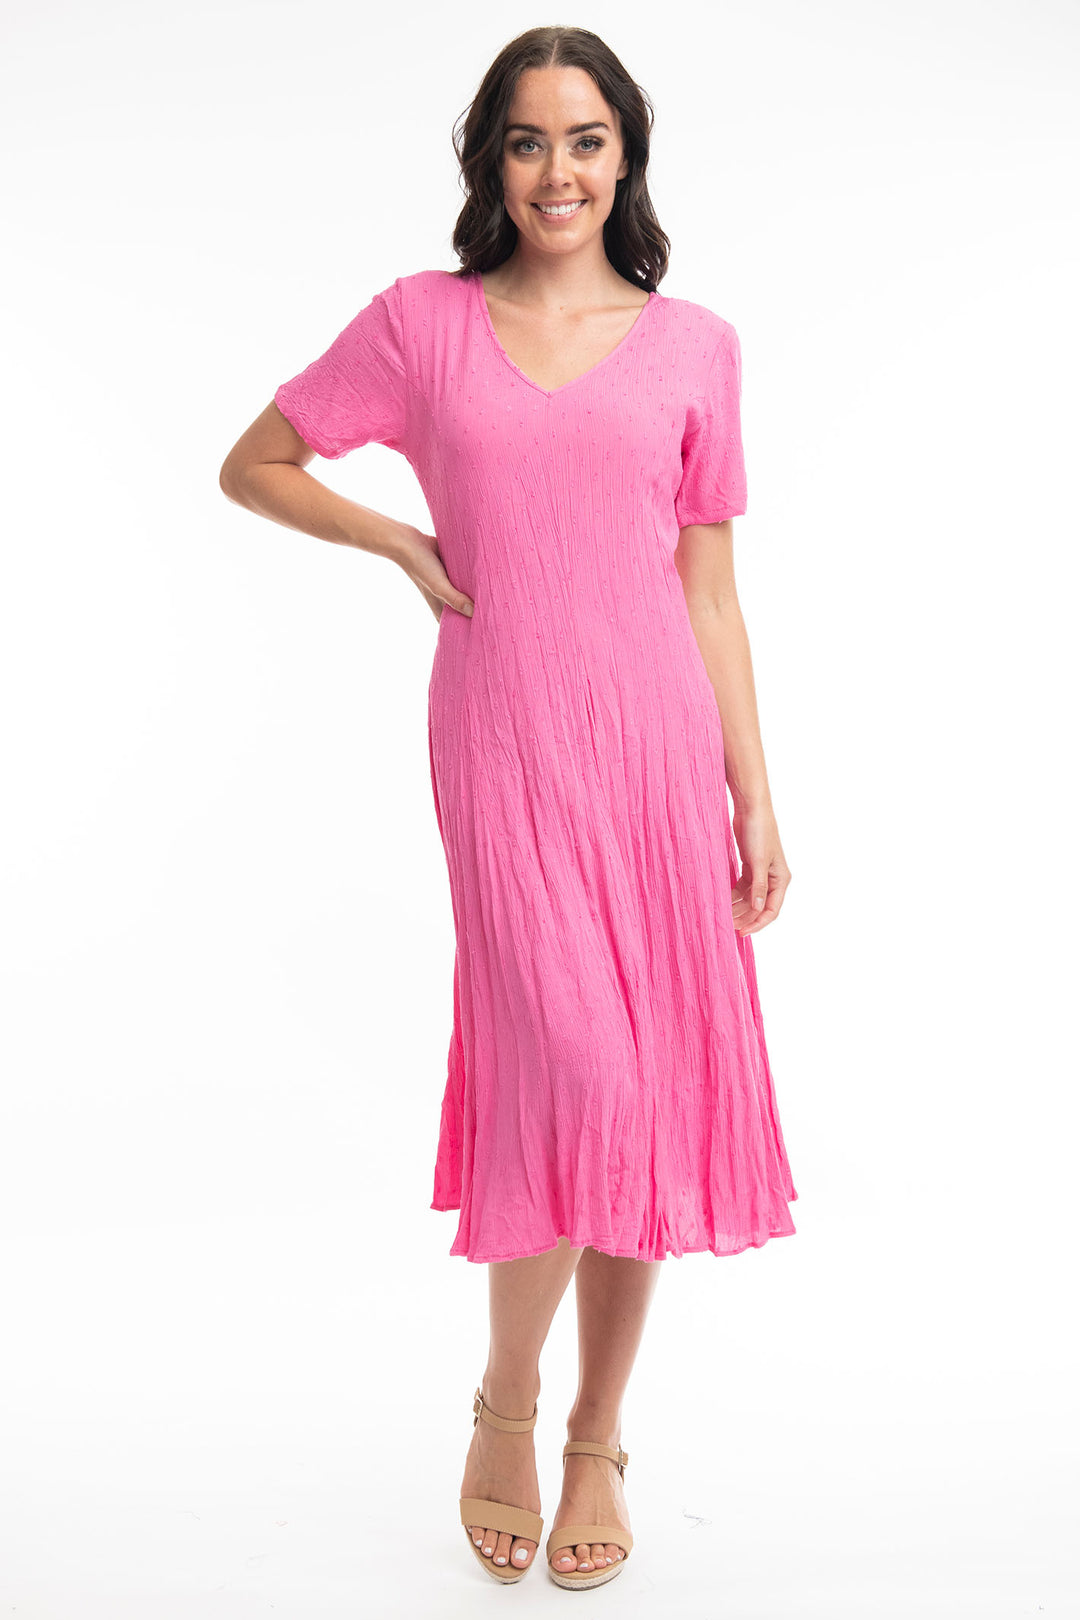 Orientique 81261 Rose Pink Short Sleeve Godet Dress - Dotique